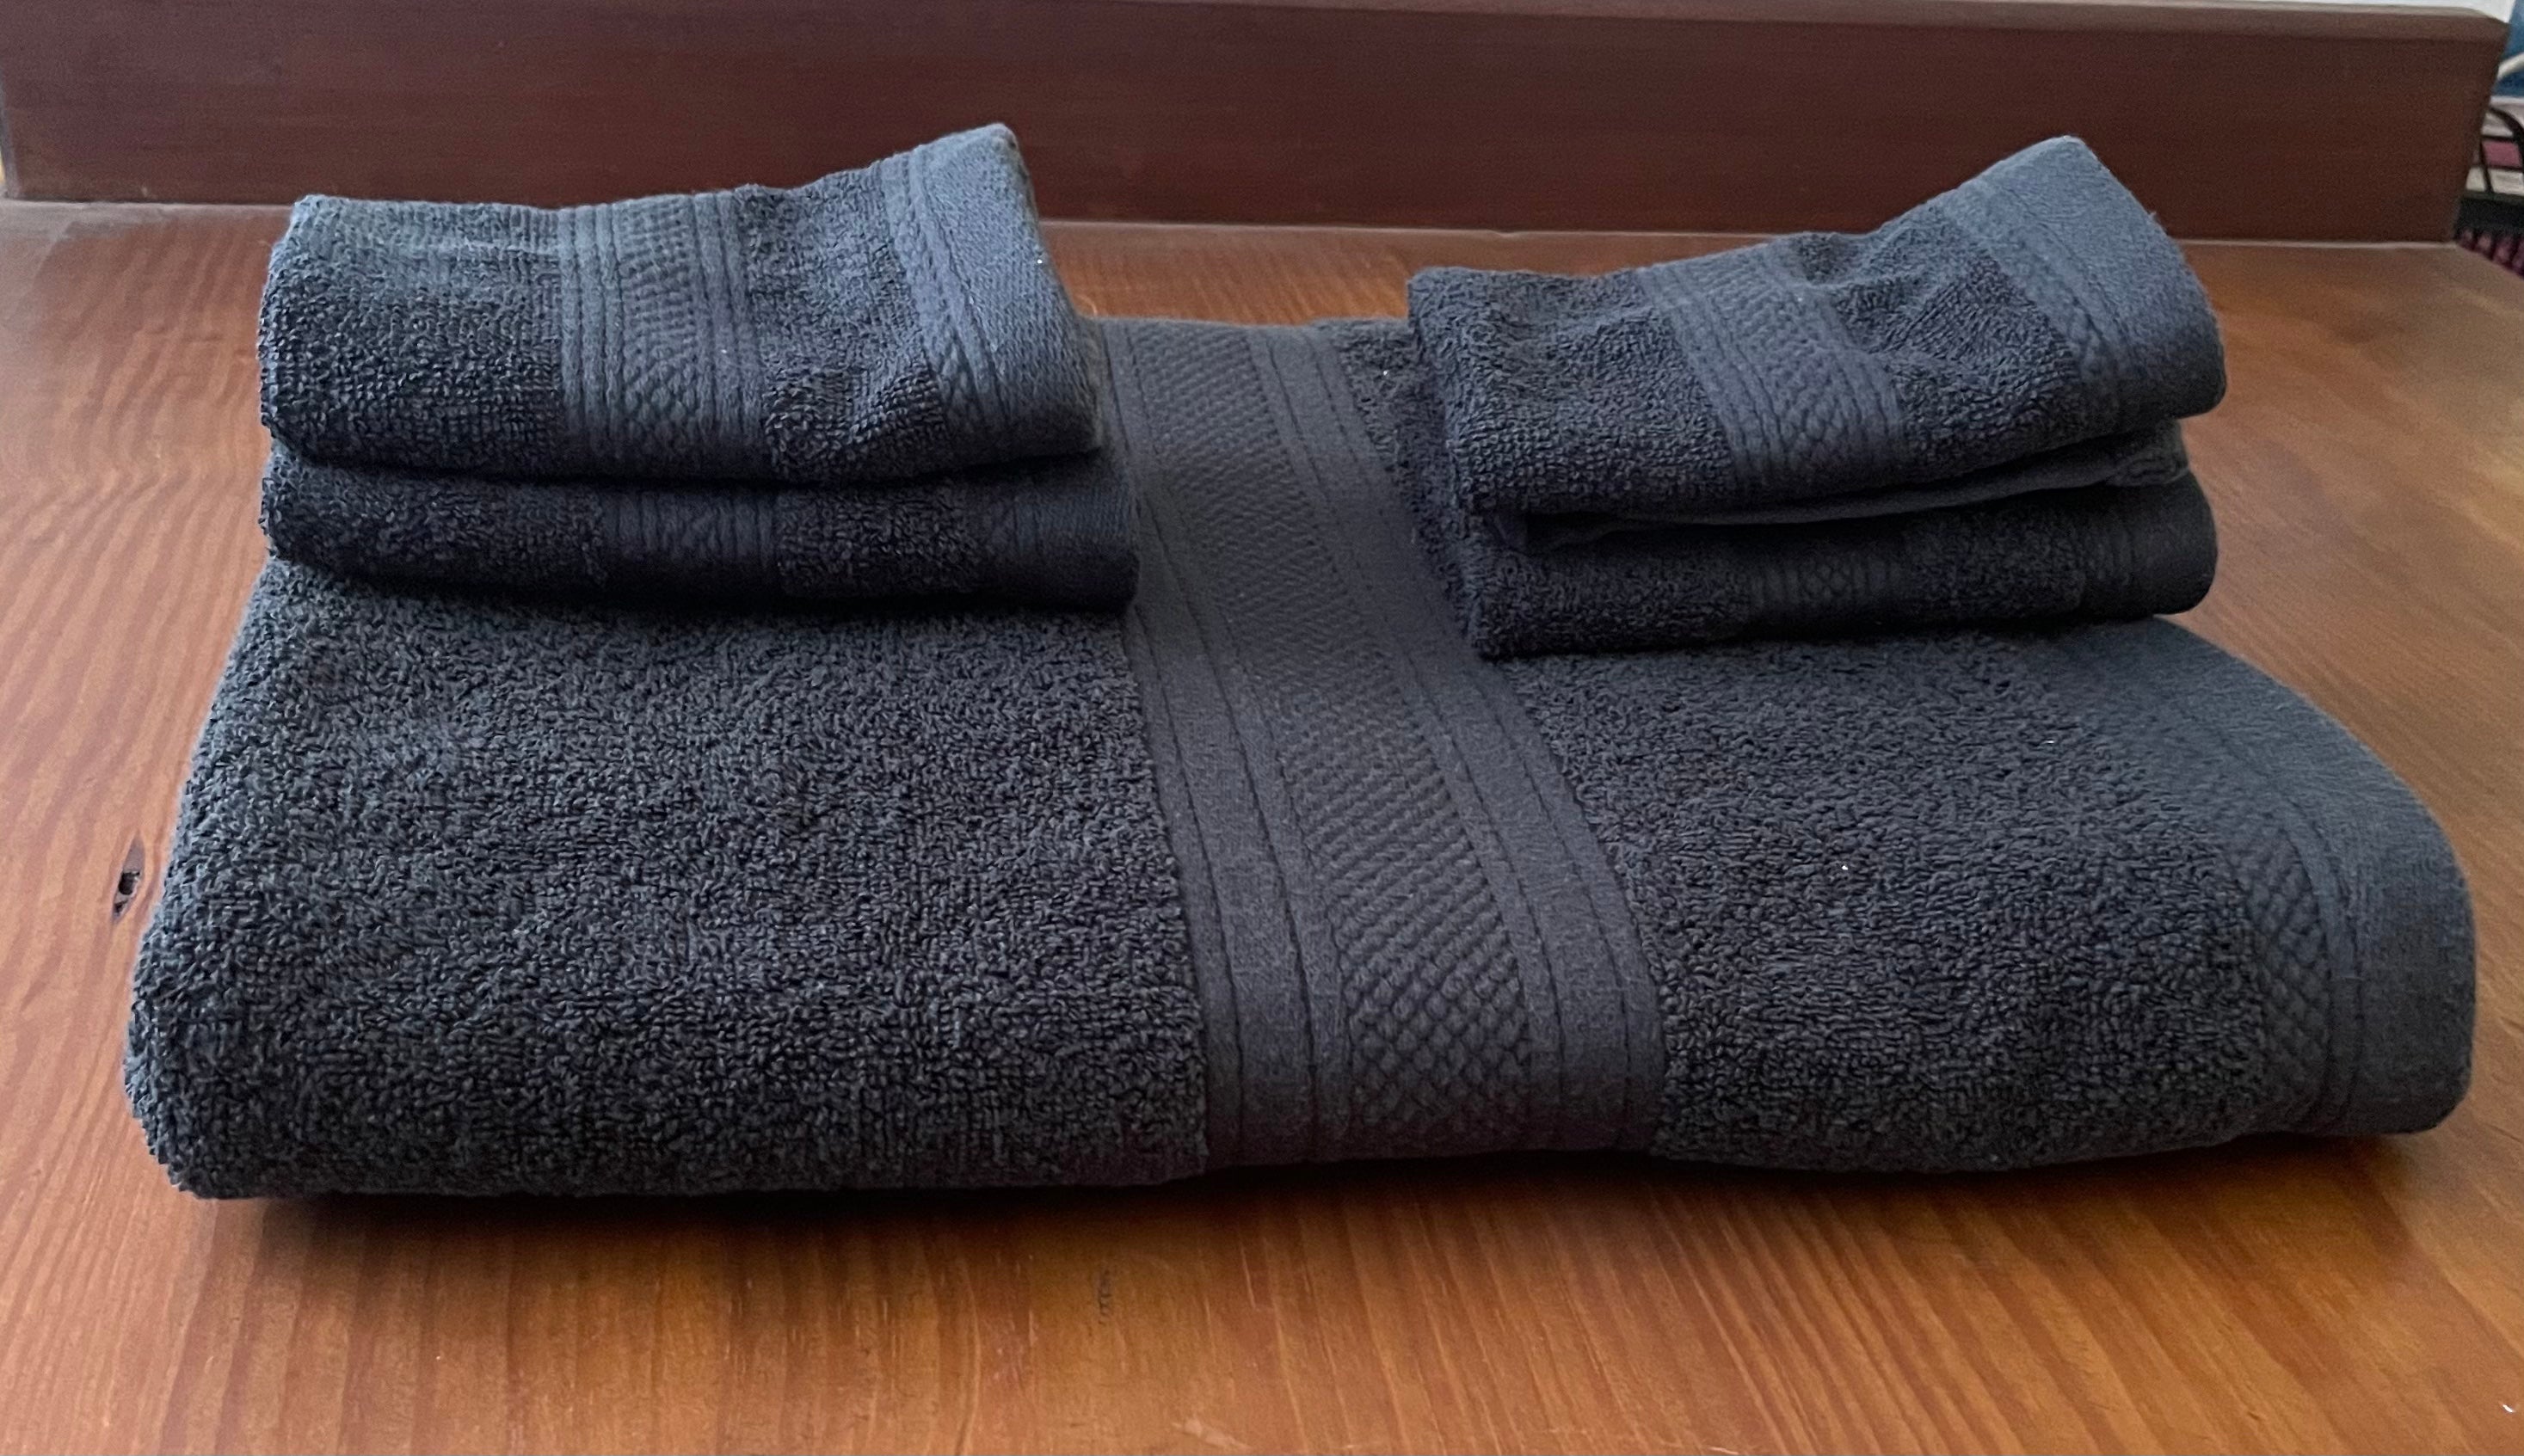 500g Cotton Towels, Black - 4 Face Cloths & 1 Bath Sheet